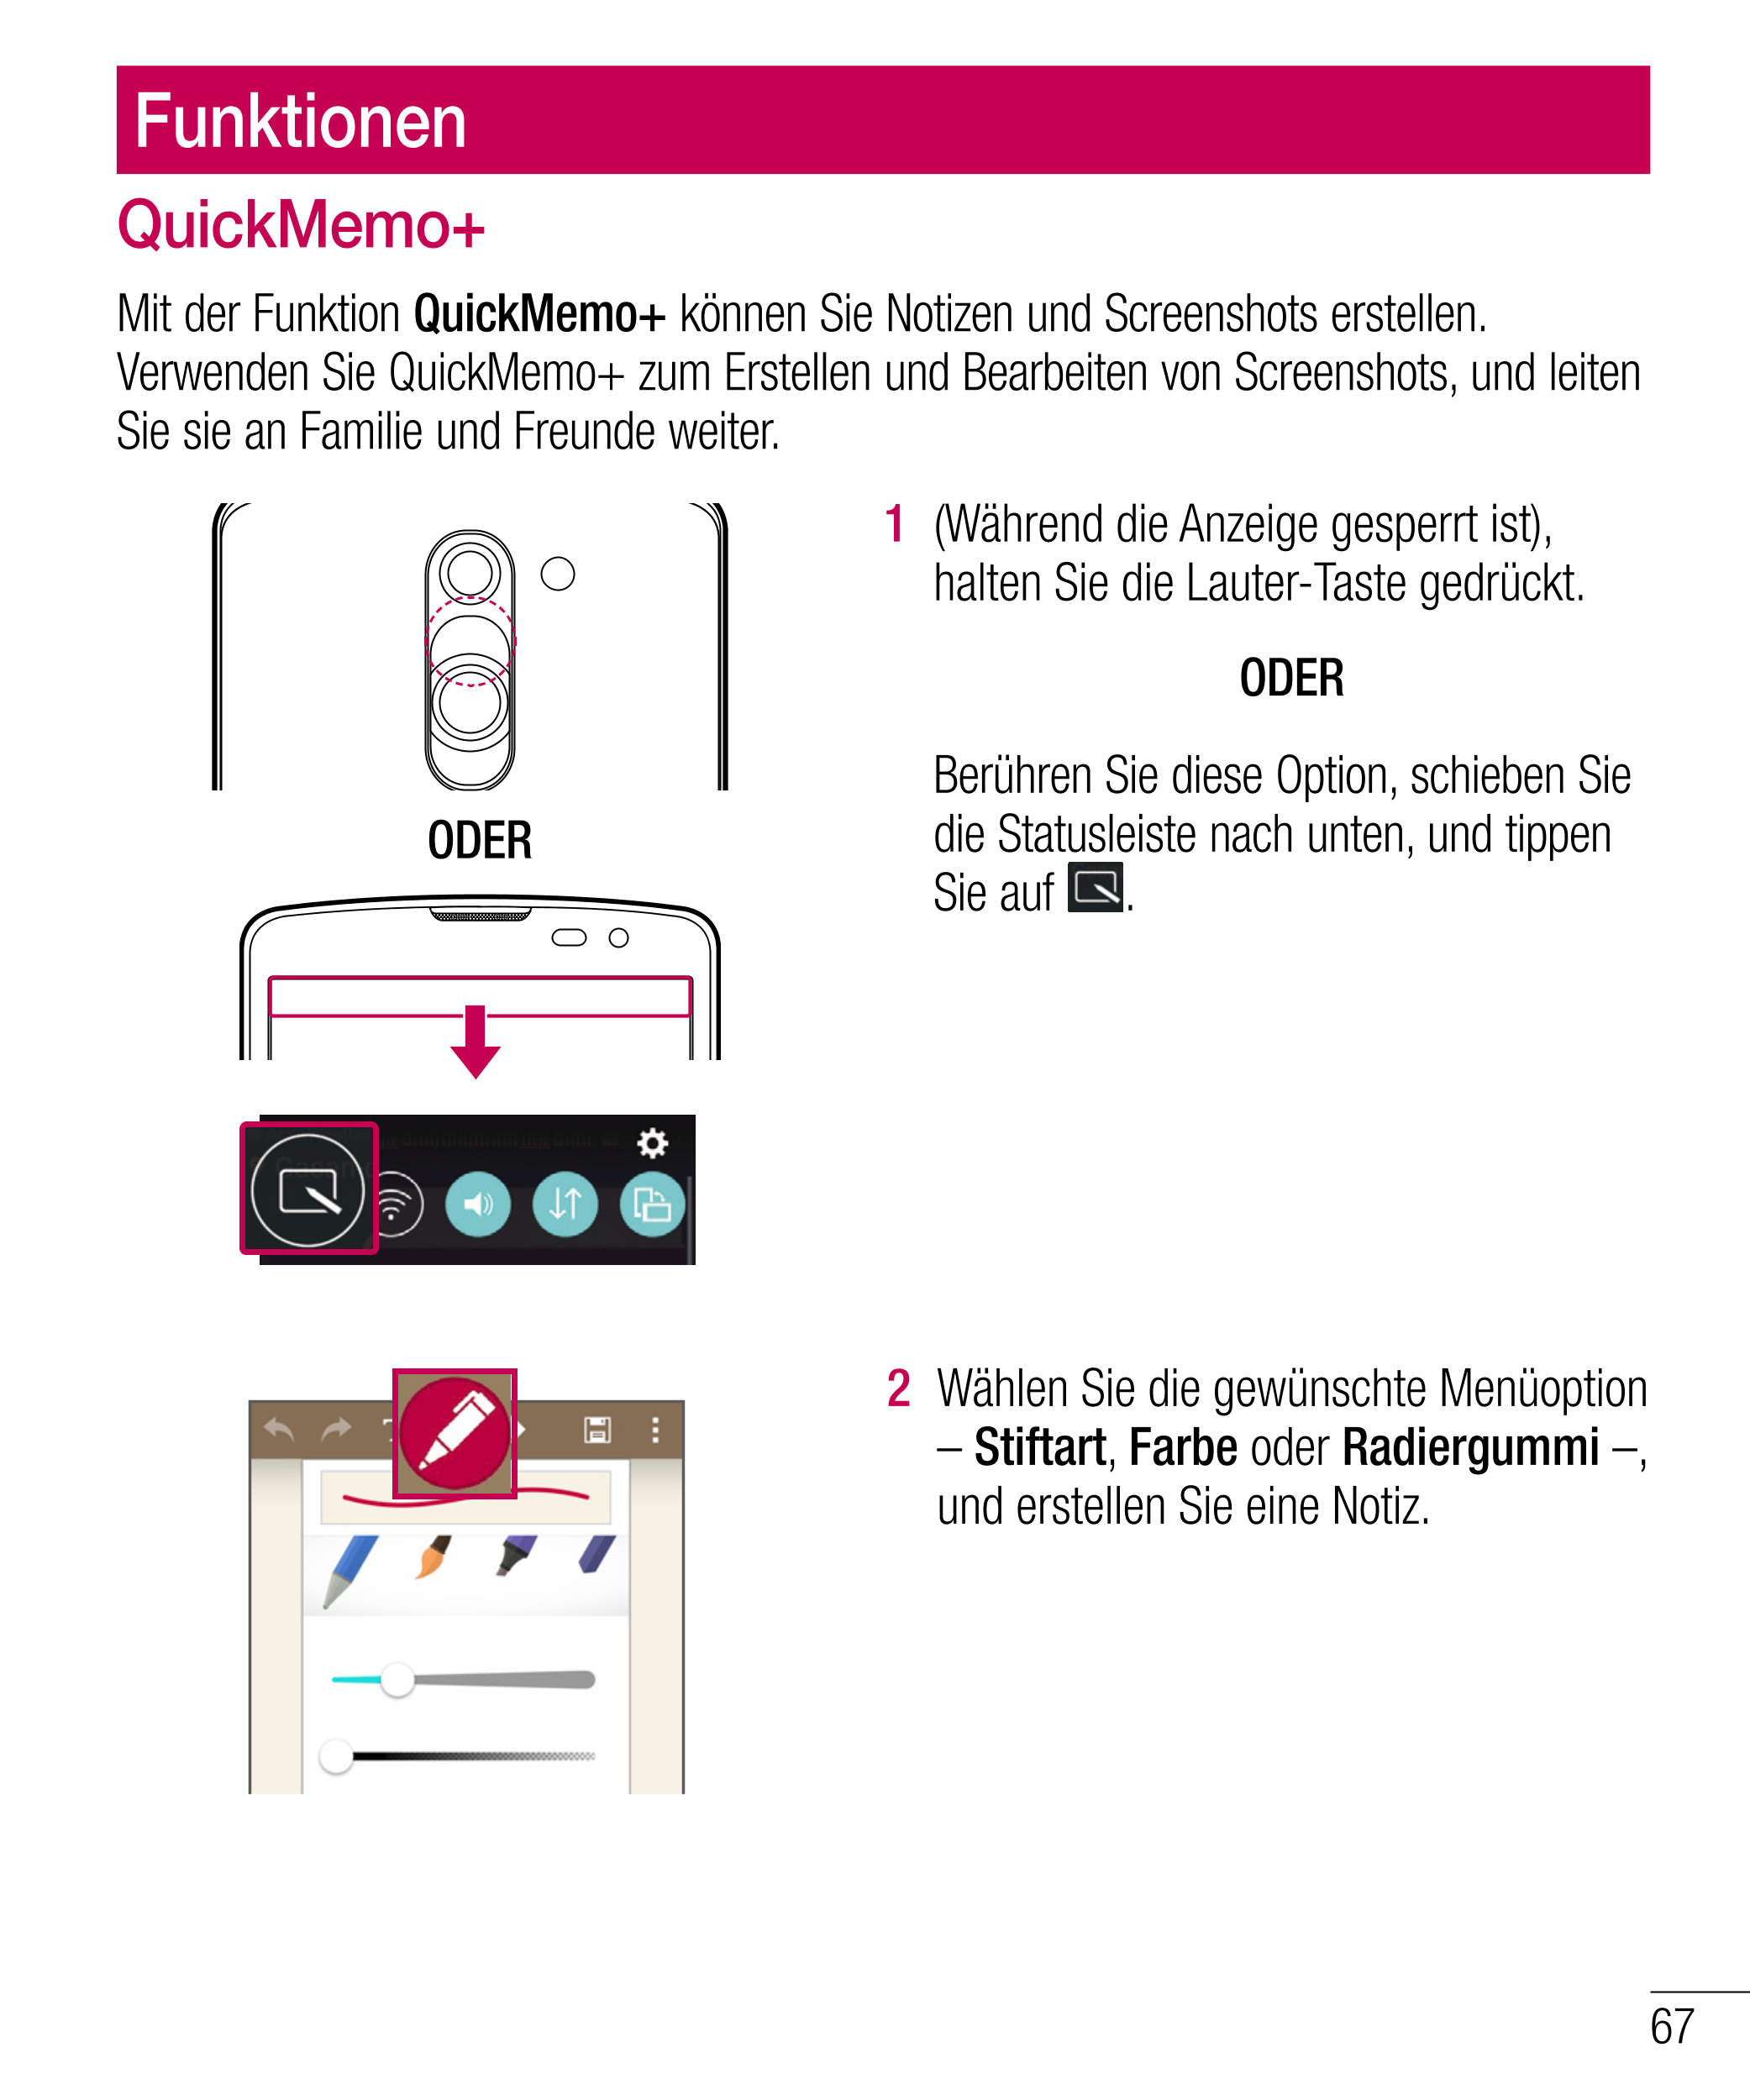 Funktionen
QuickMemo+
Mit der Funktion  QuickMemo+ können Sie Notizen und Screenshots erstellen. 
Verwenden Sie QuickMemo+ zum E